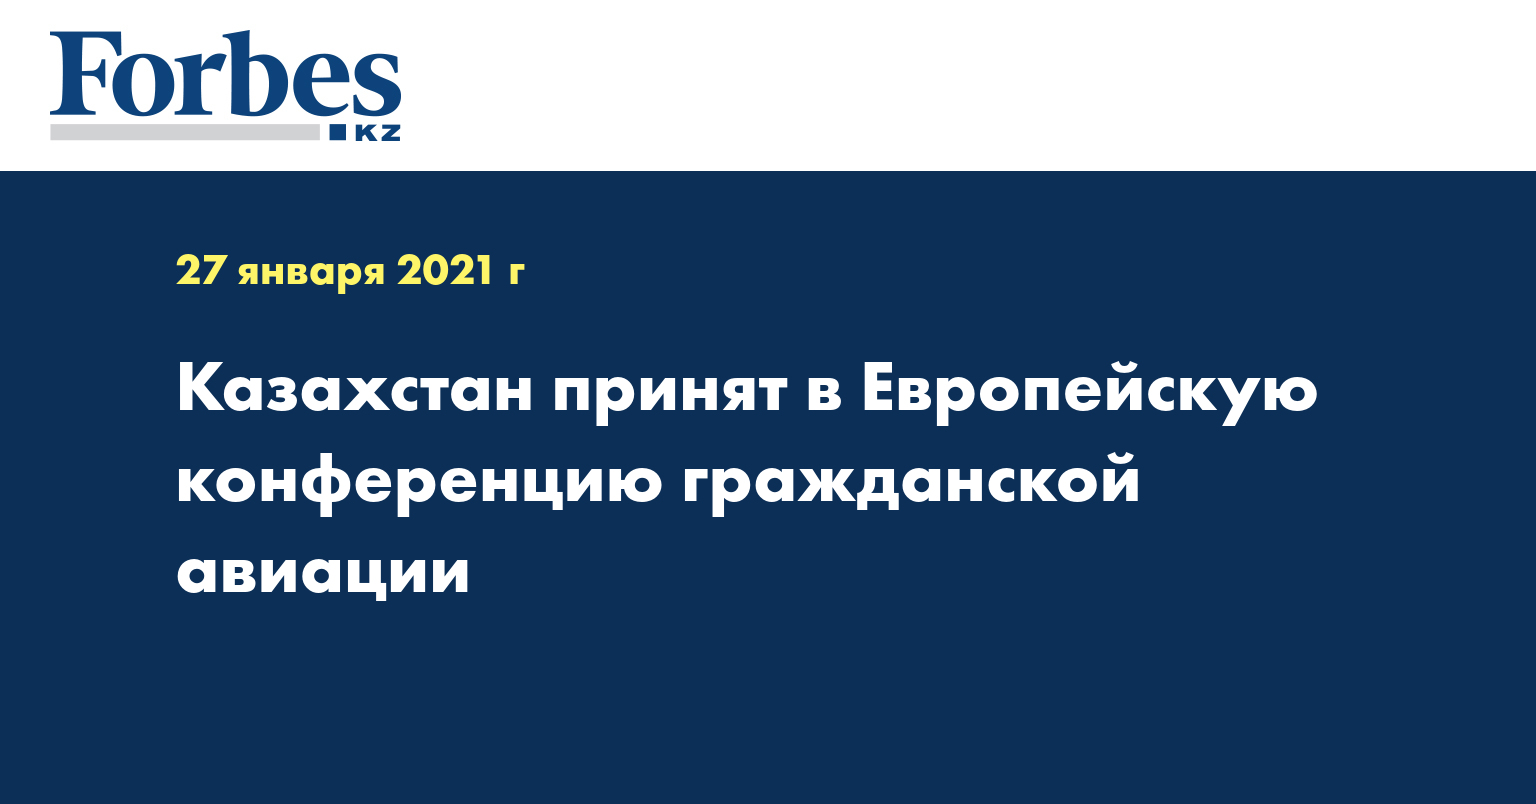 Казахстан принят в Европейскую конференцию гражданской авиации